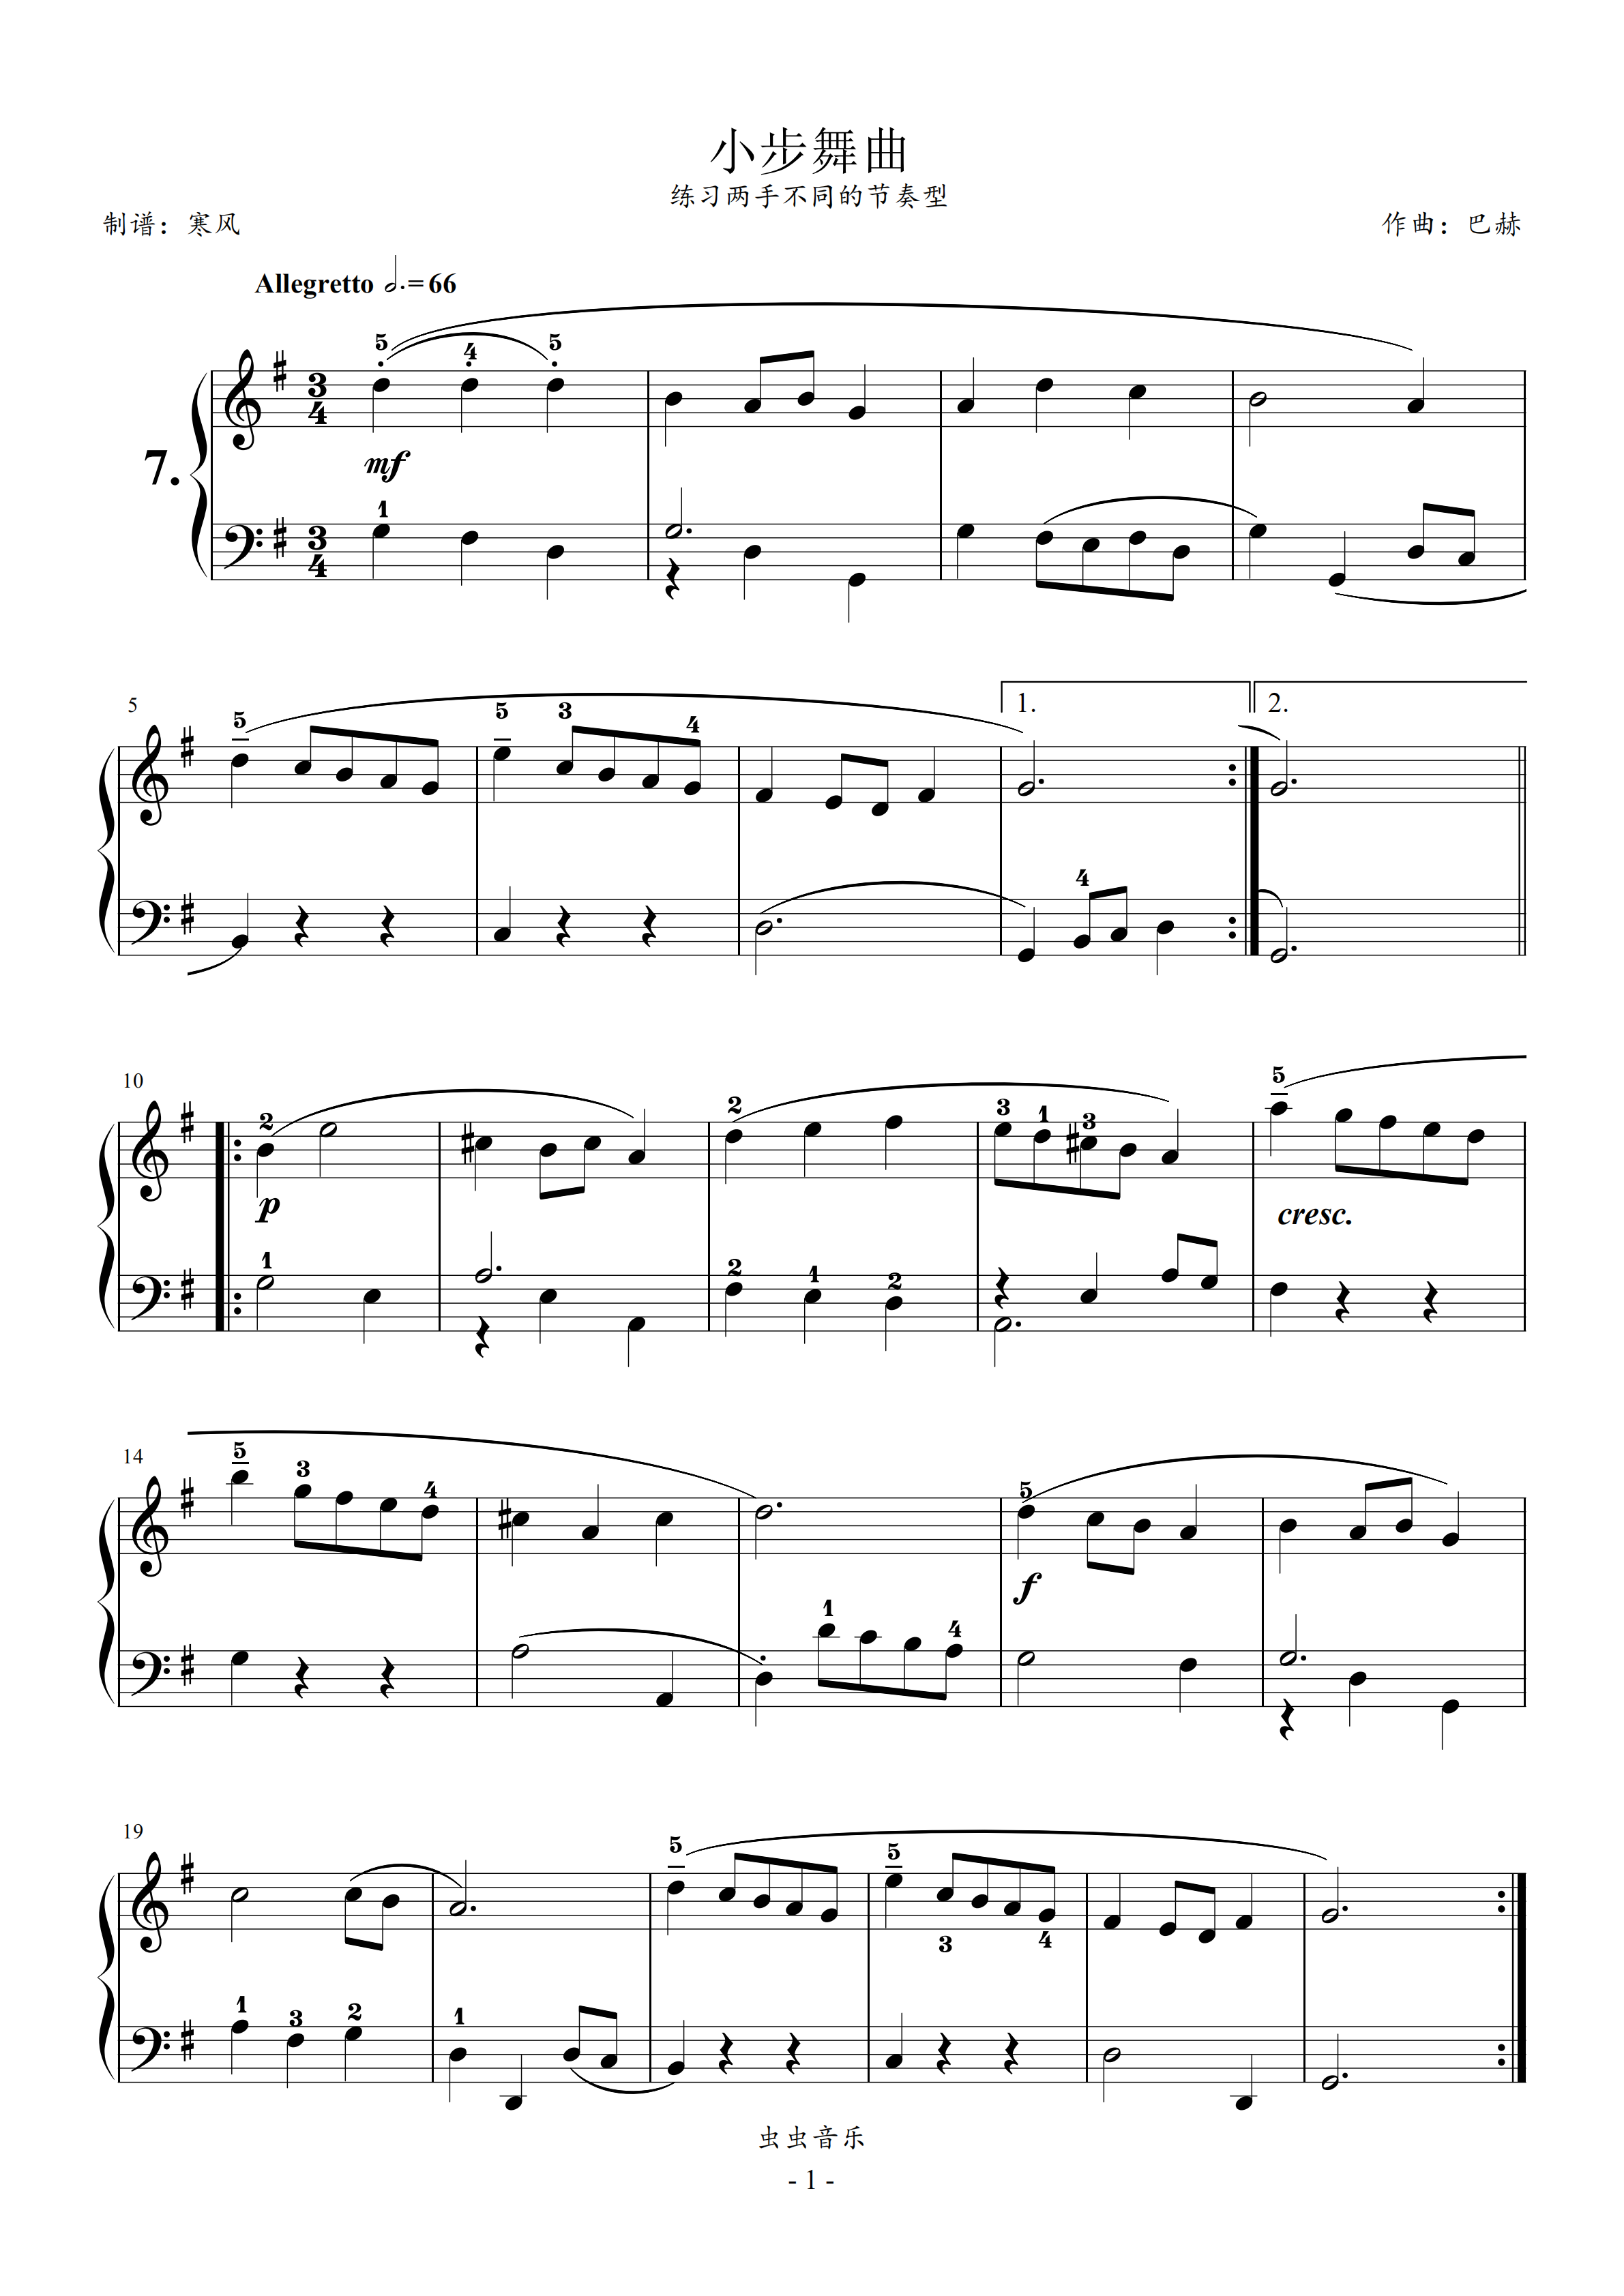 巴赫初级07小步舞曲g小调巴赫初级钢琴曲集